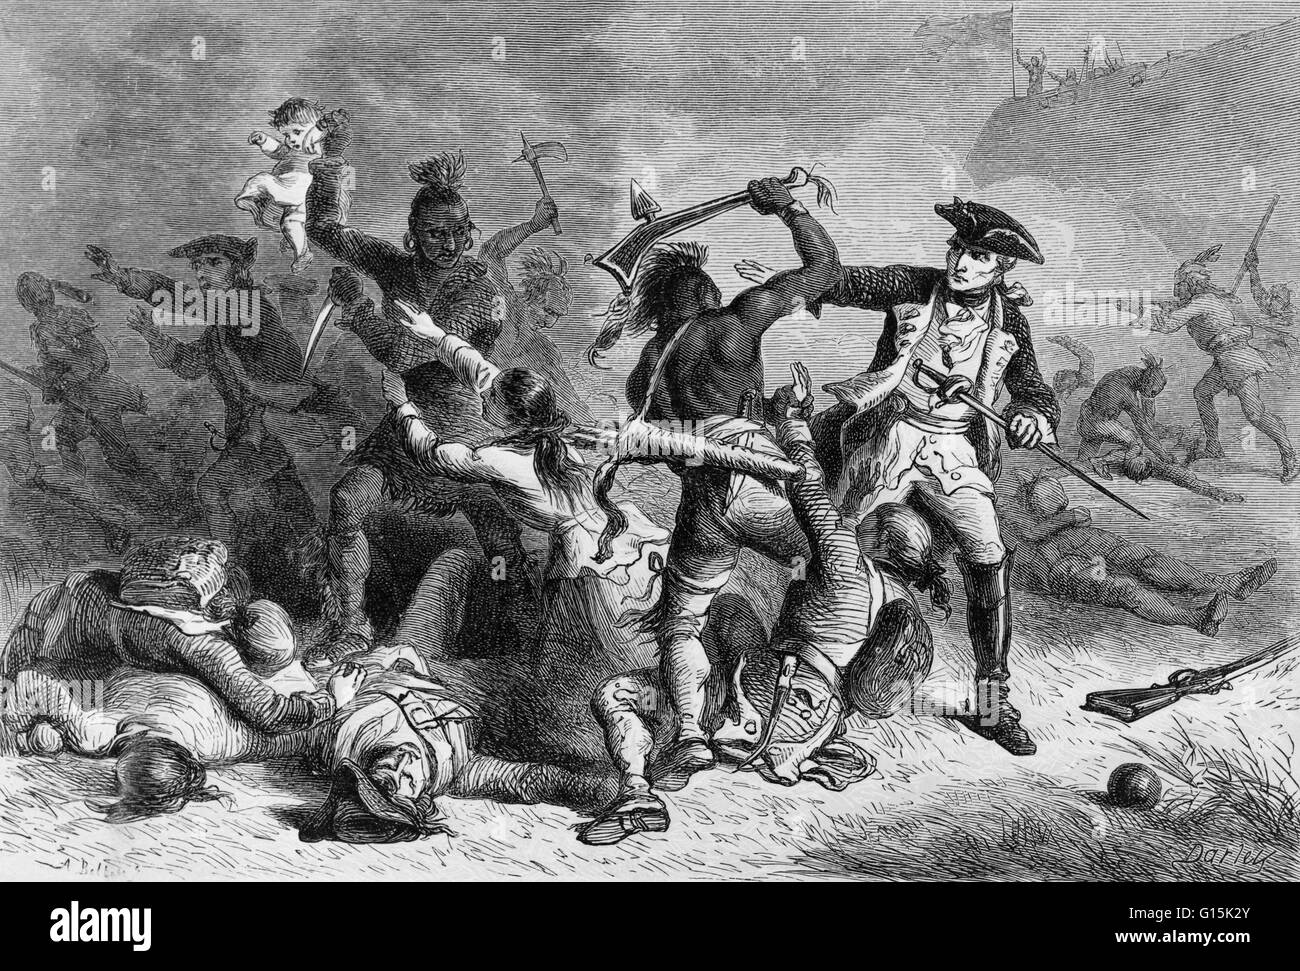 Drucken, Darstellung der Schlacht von Fort William Henry, mit dem Titel: "Montcalm versucht, das Massaker zu stoppen." Montcalm Sieg bei Fort William Henry im Jahre 1757 war ein Militär und persönlichen Sieg, aber das Verhalten seiner Algonquin Verbündeten, die britische s massakriert Stockfoto